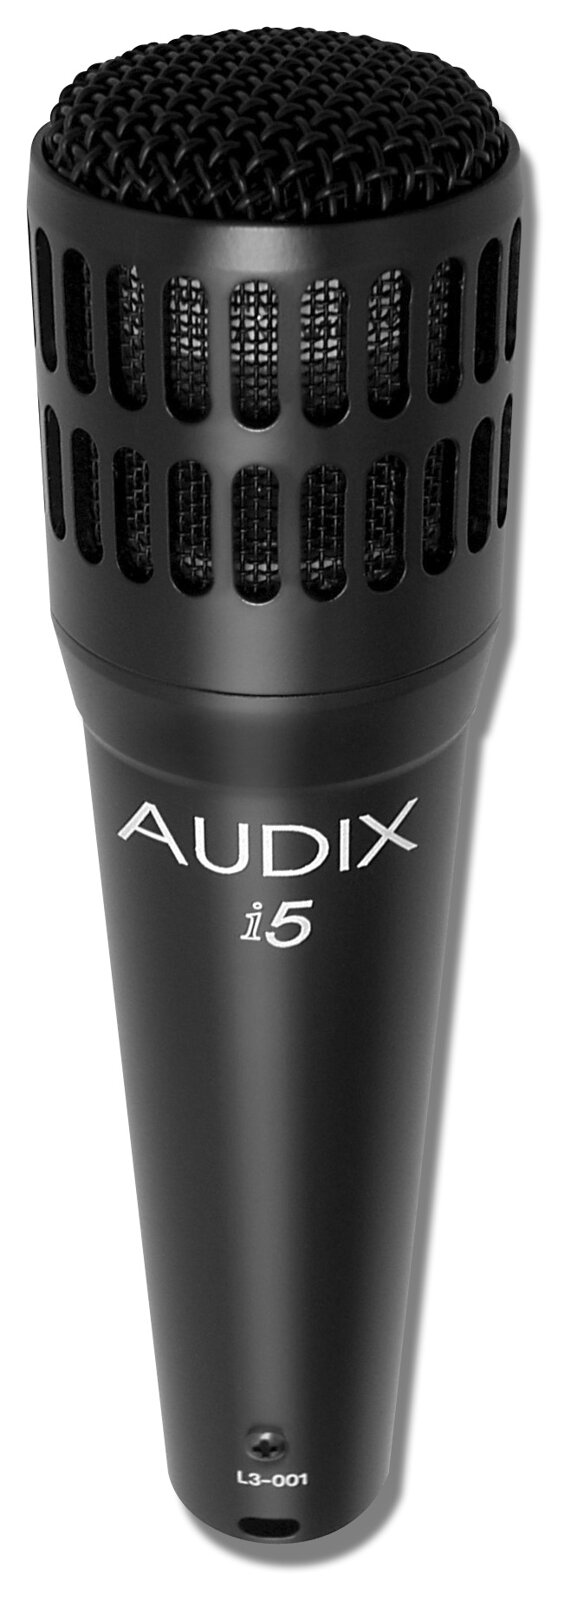 Audix I5 : photo 1